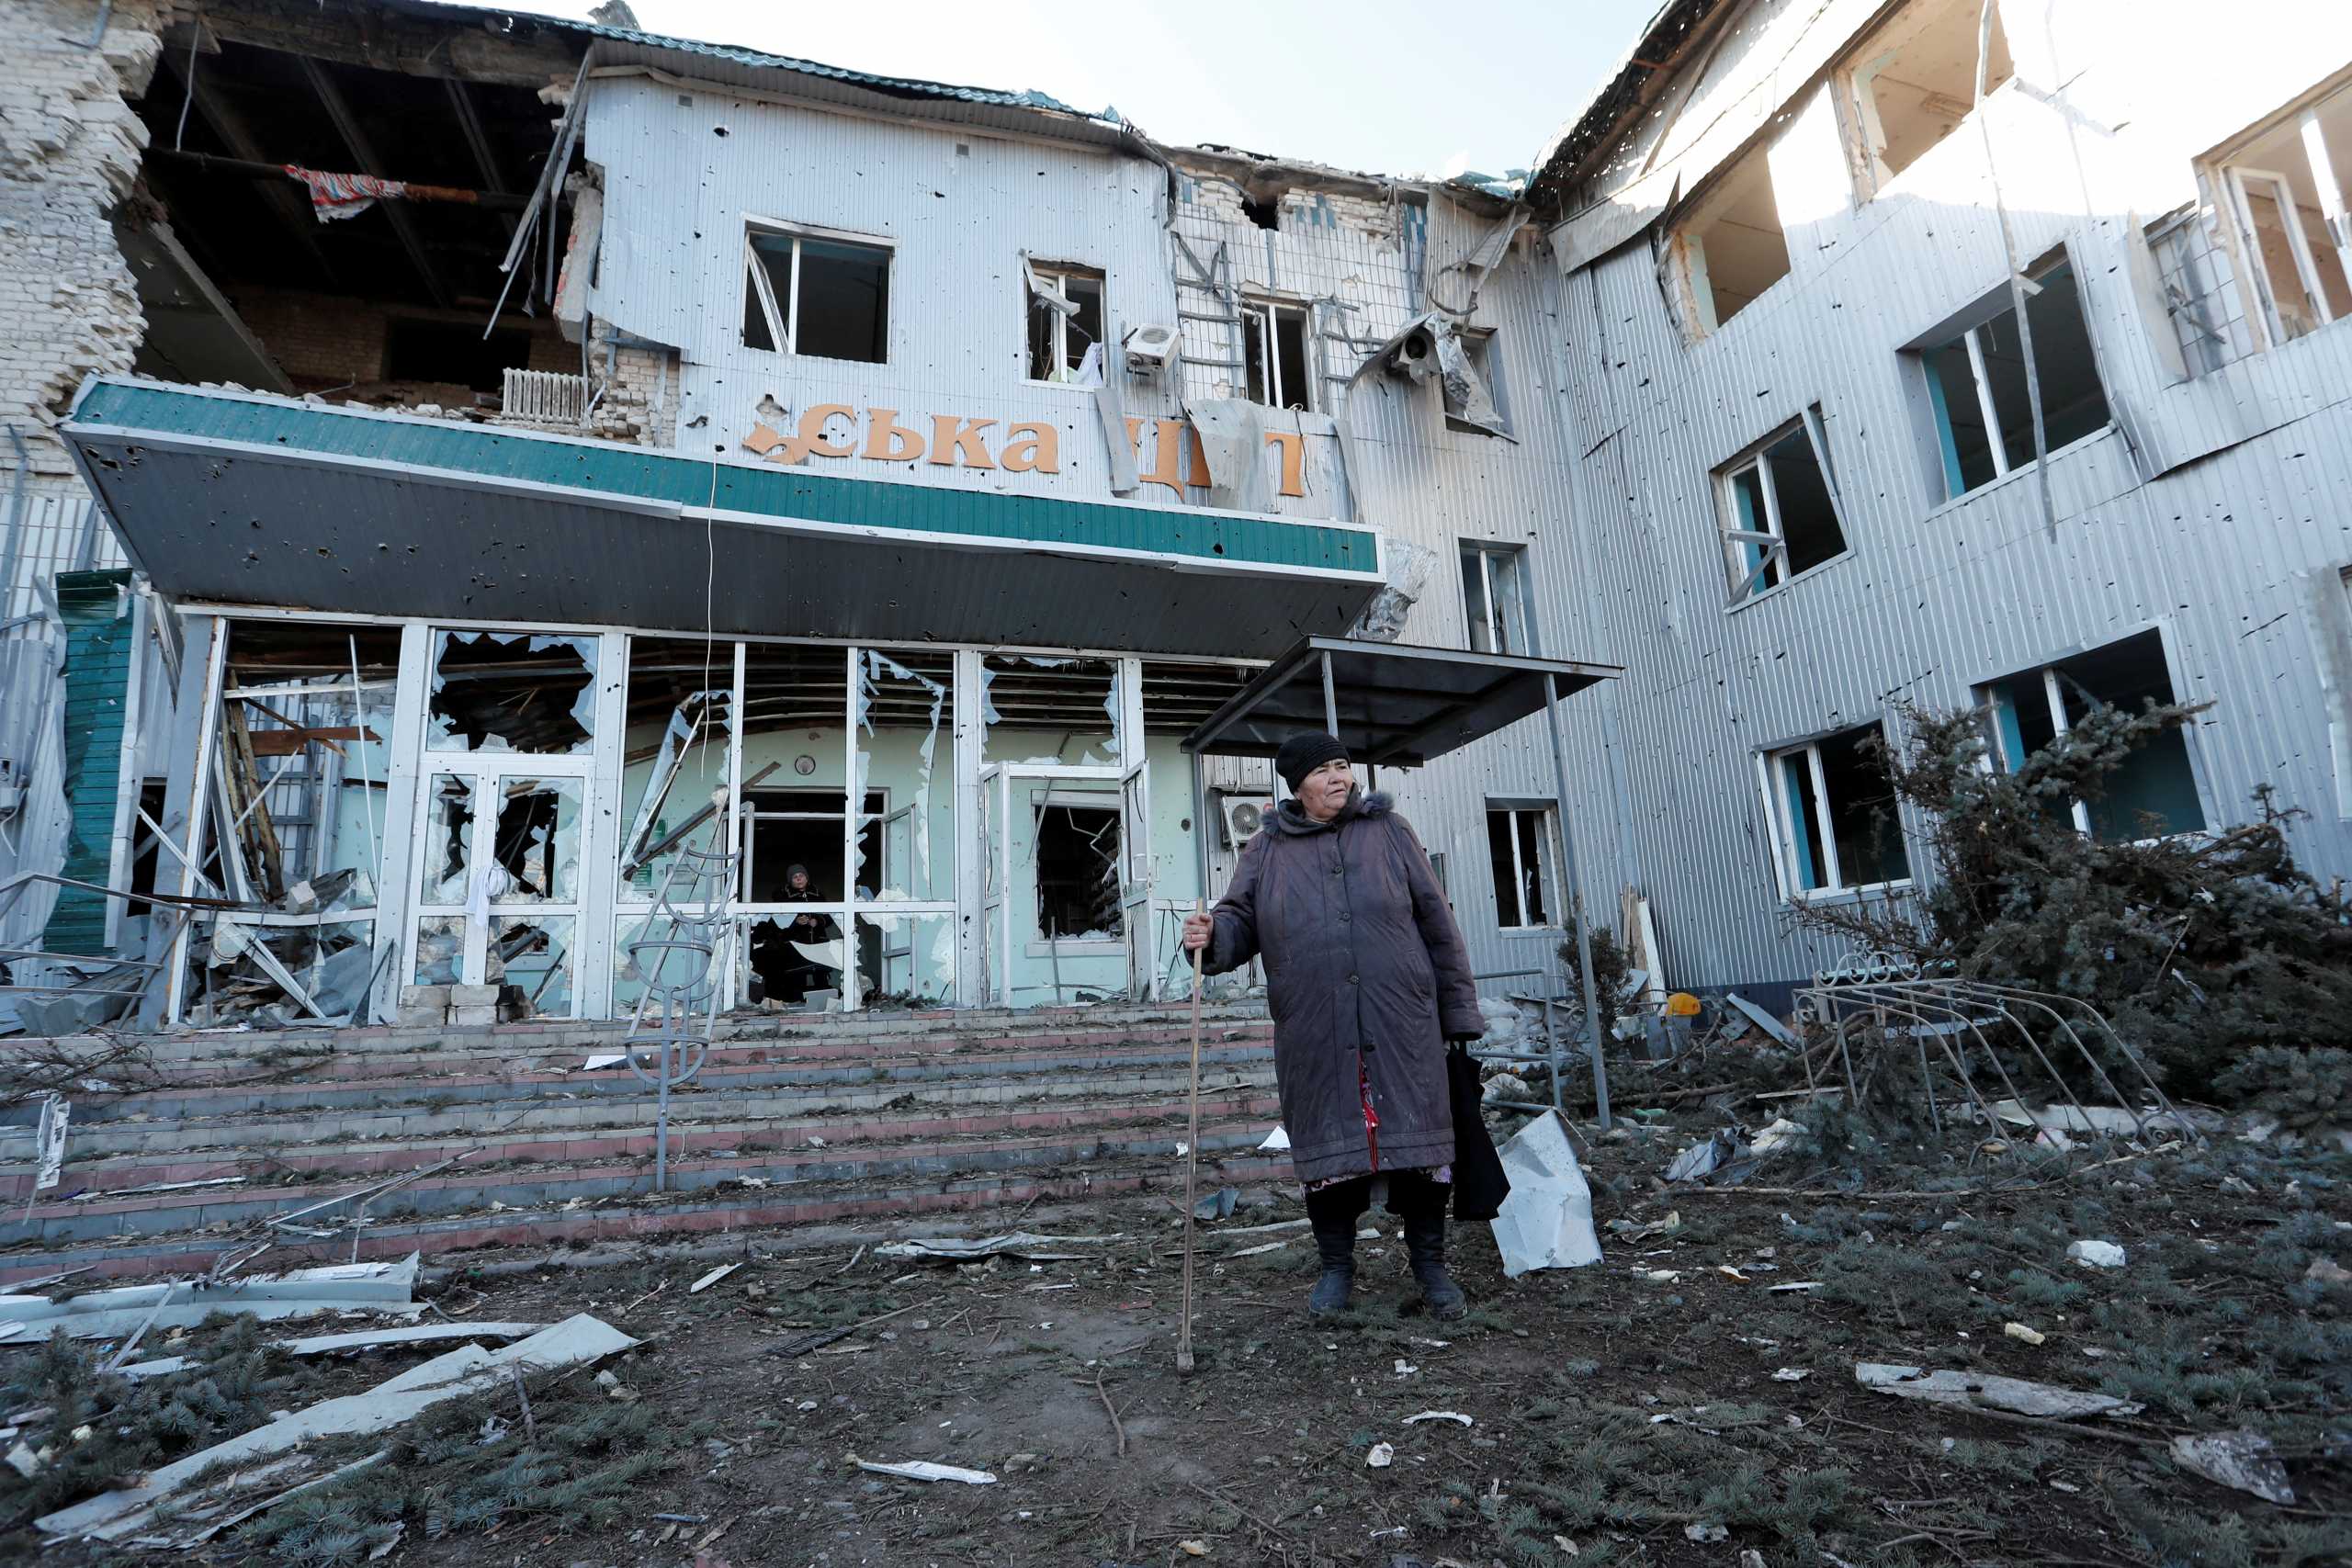 Πόλεμος στην Ουκρανία: Η Ρωσία μπορεί να οικειοποιηθεί την περιουσία των κατεχόμενων περιοχών λέει ο Πεσκόφ